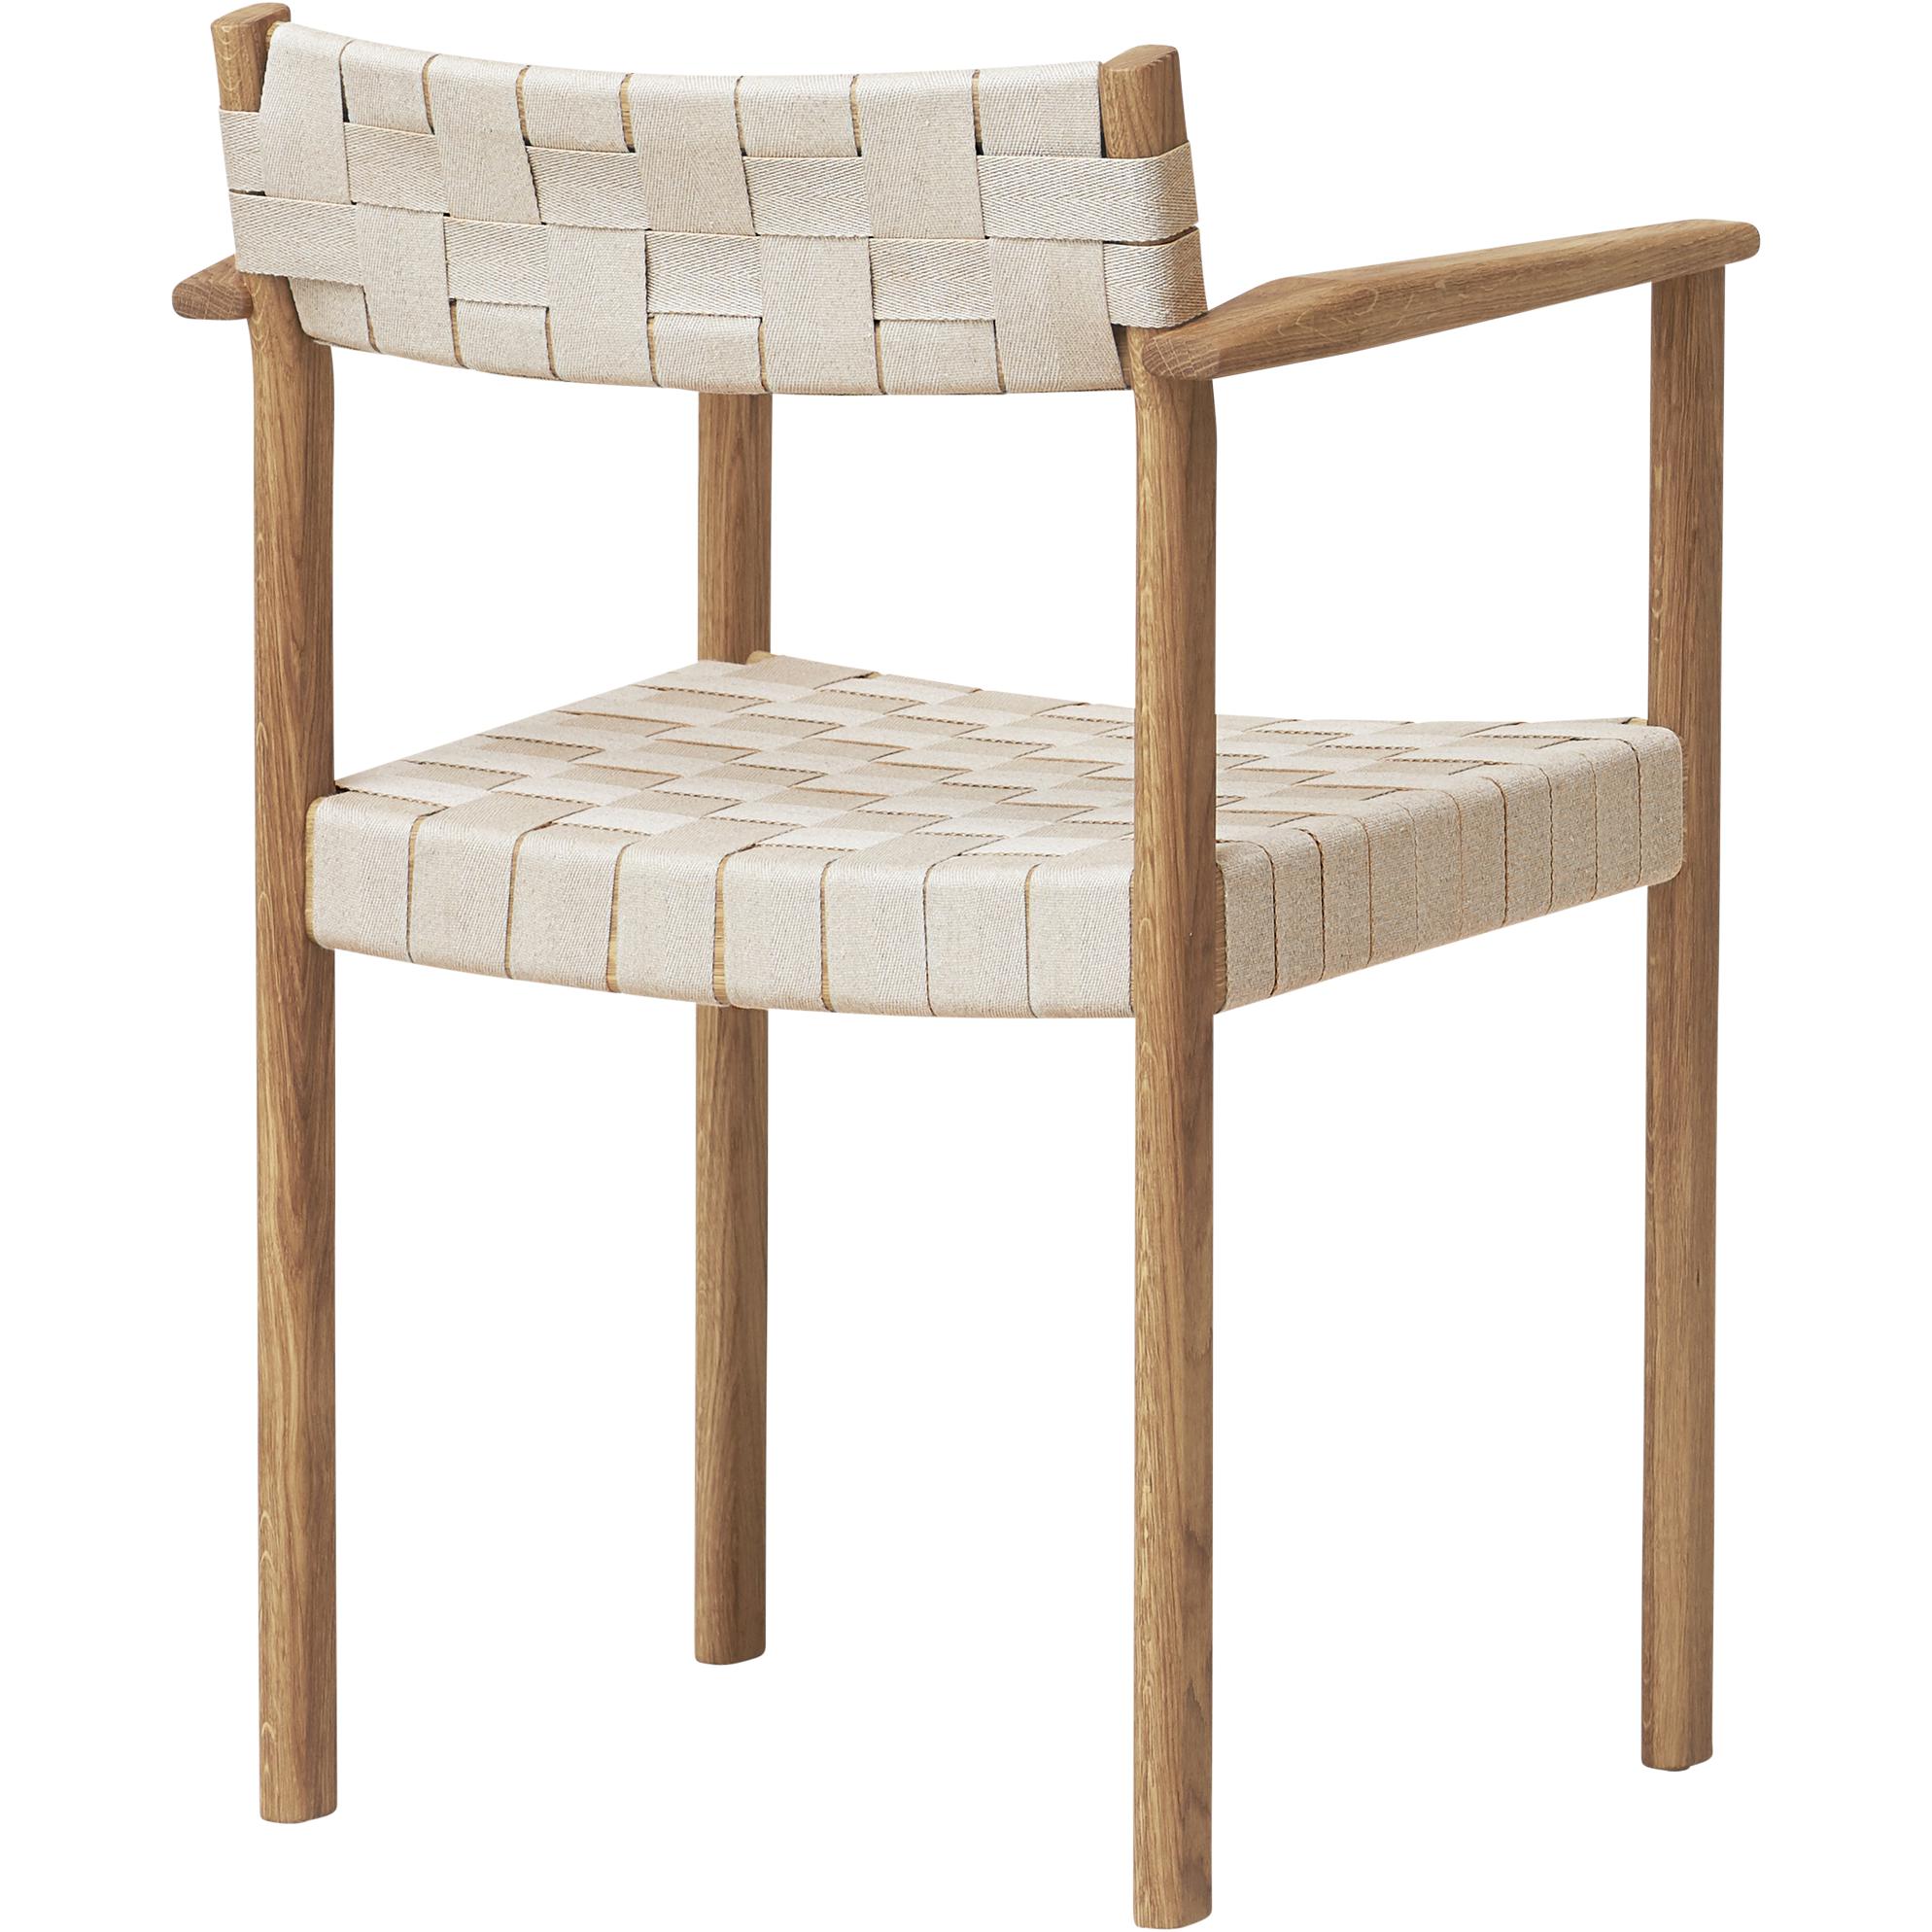 形式和完善的主题扶手椅。橡木